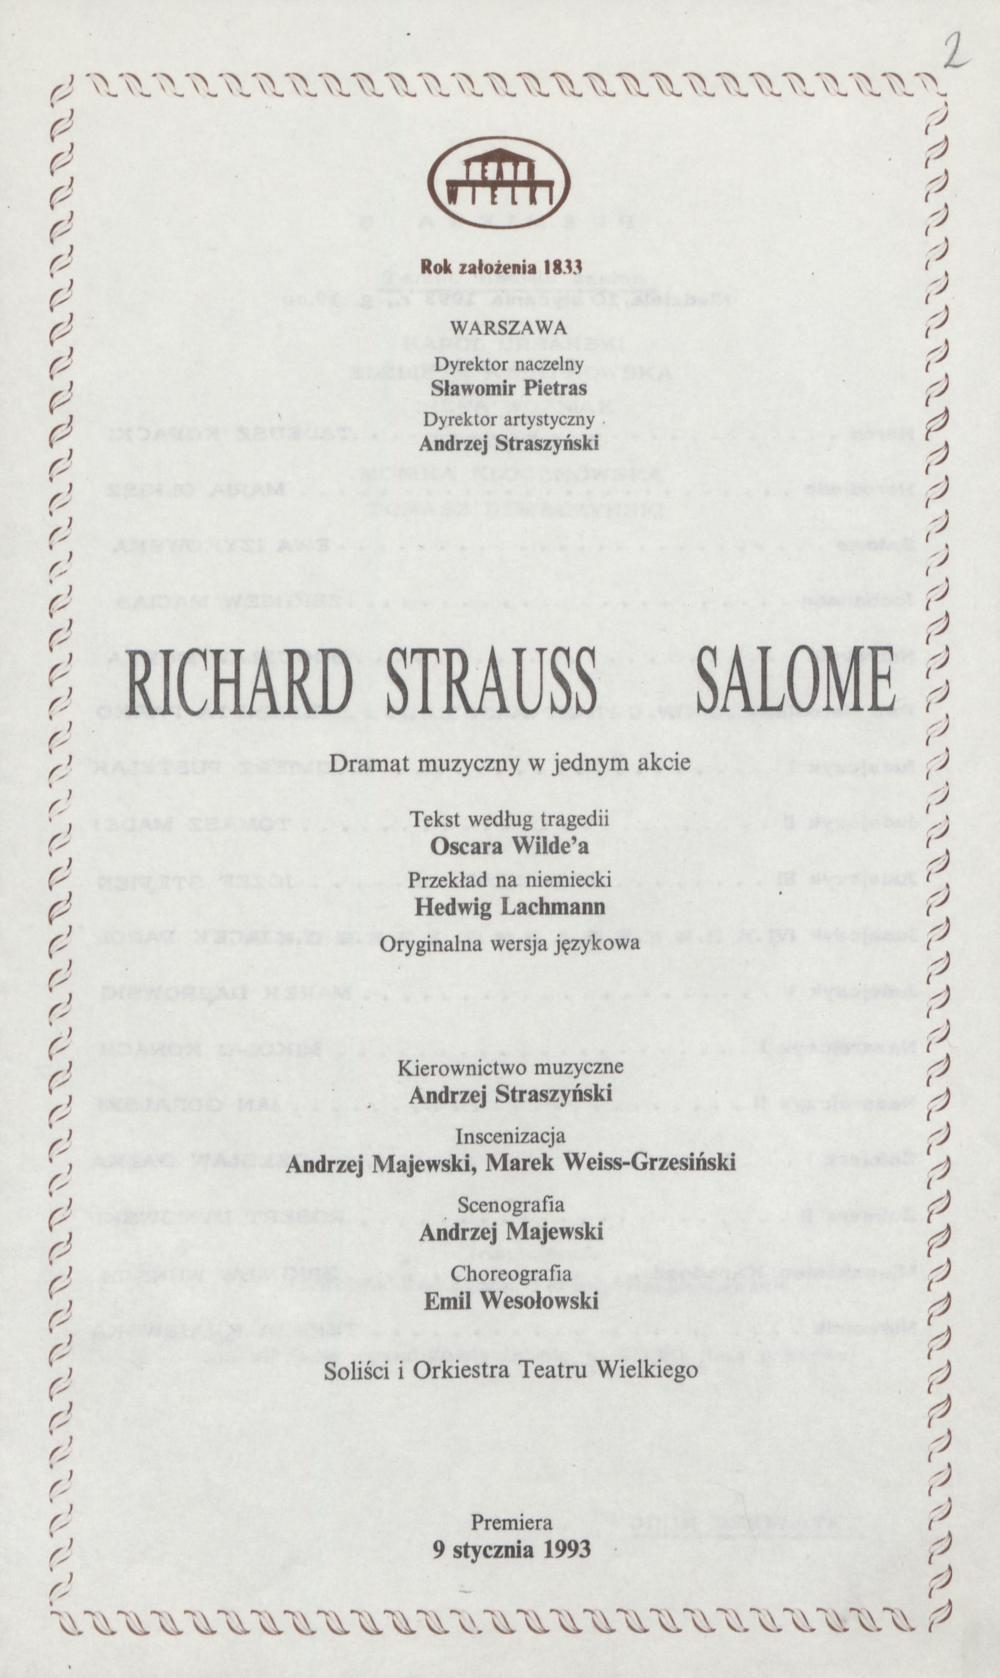 Wkładka premierowa B „Salome” Richard Strauss 10-01-1993